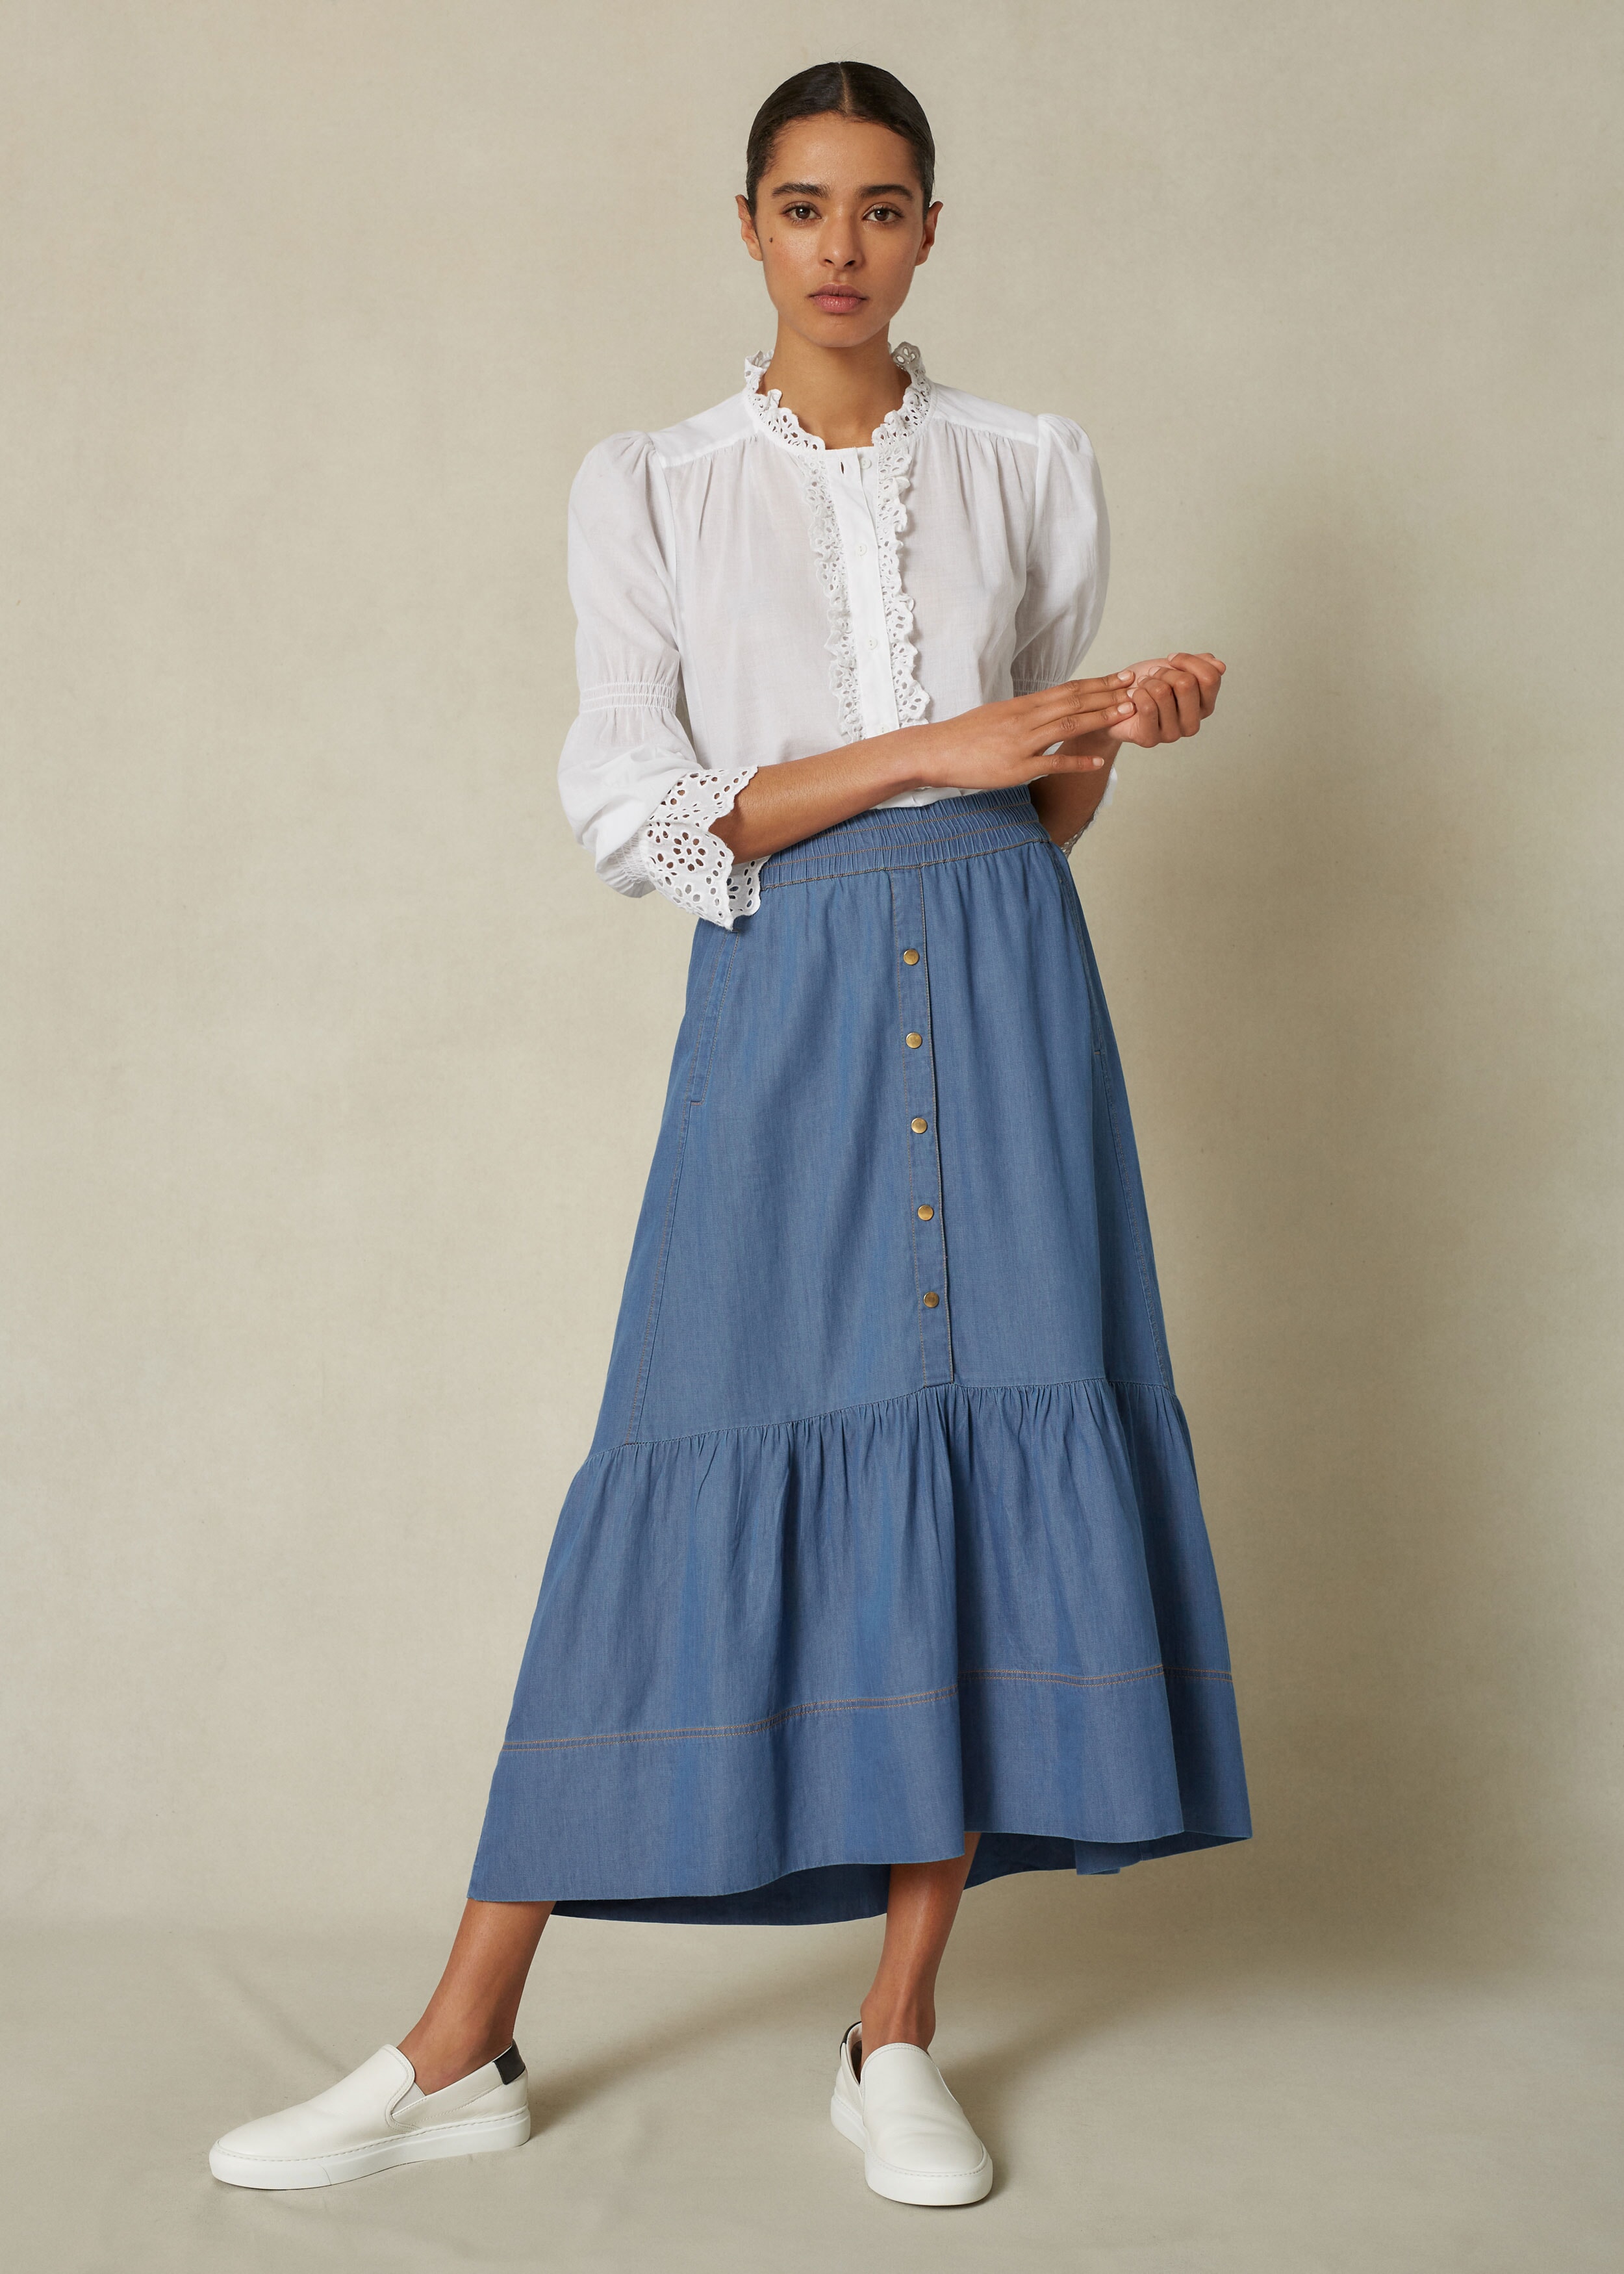 Chambray Denim Skirt + Belt Denim Blue